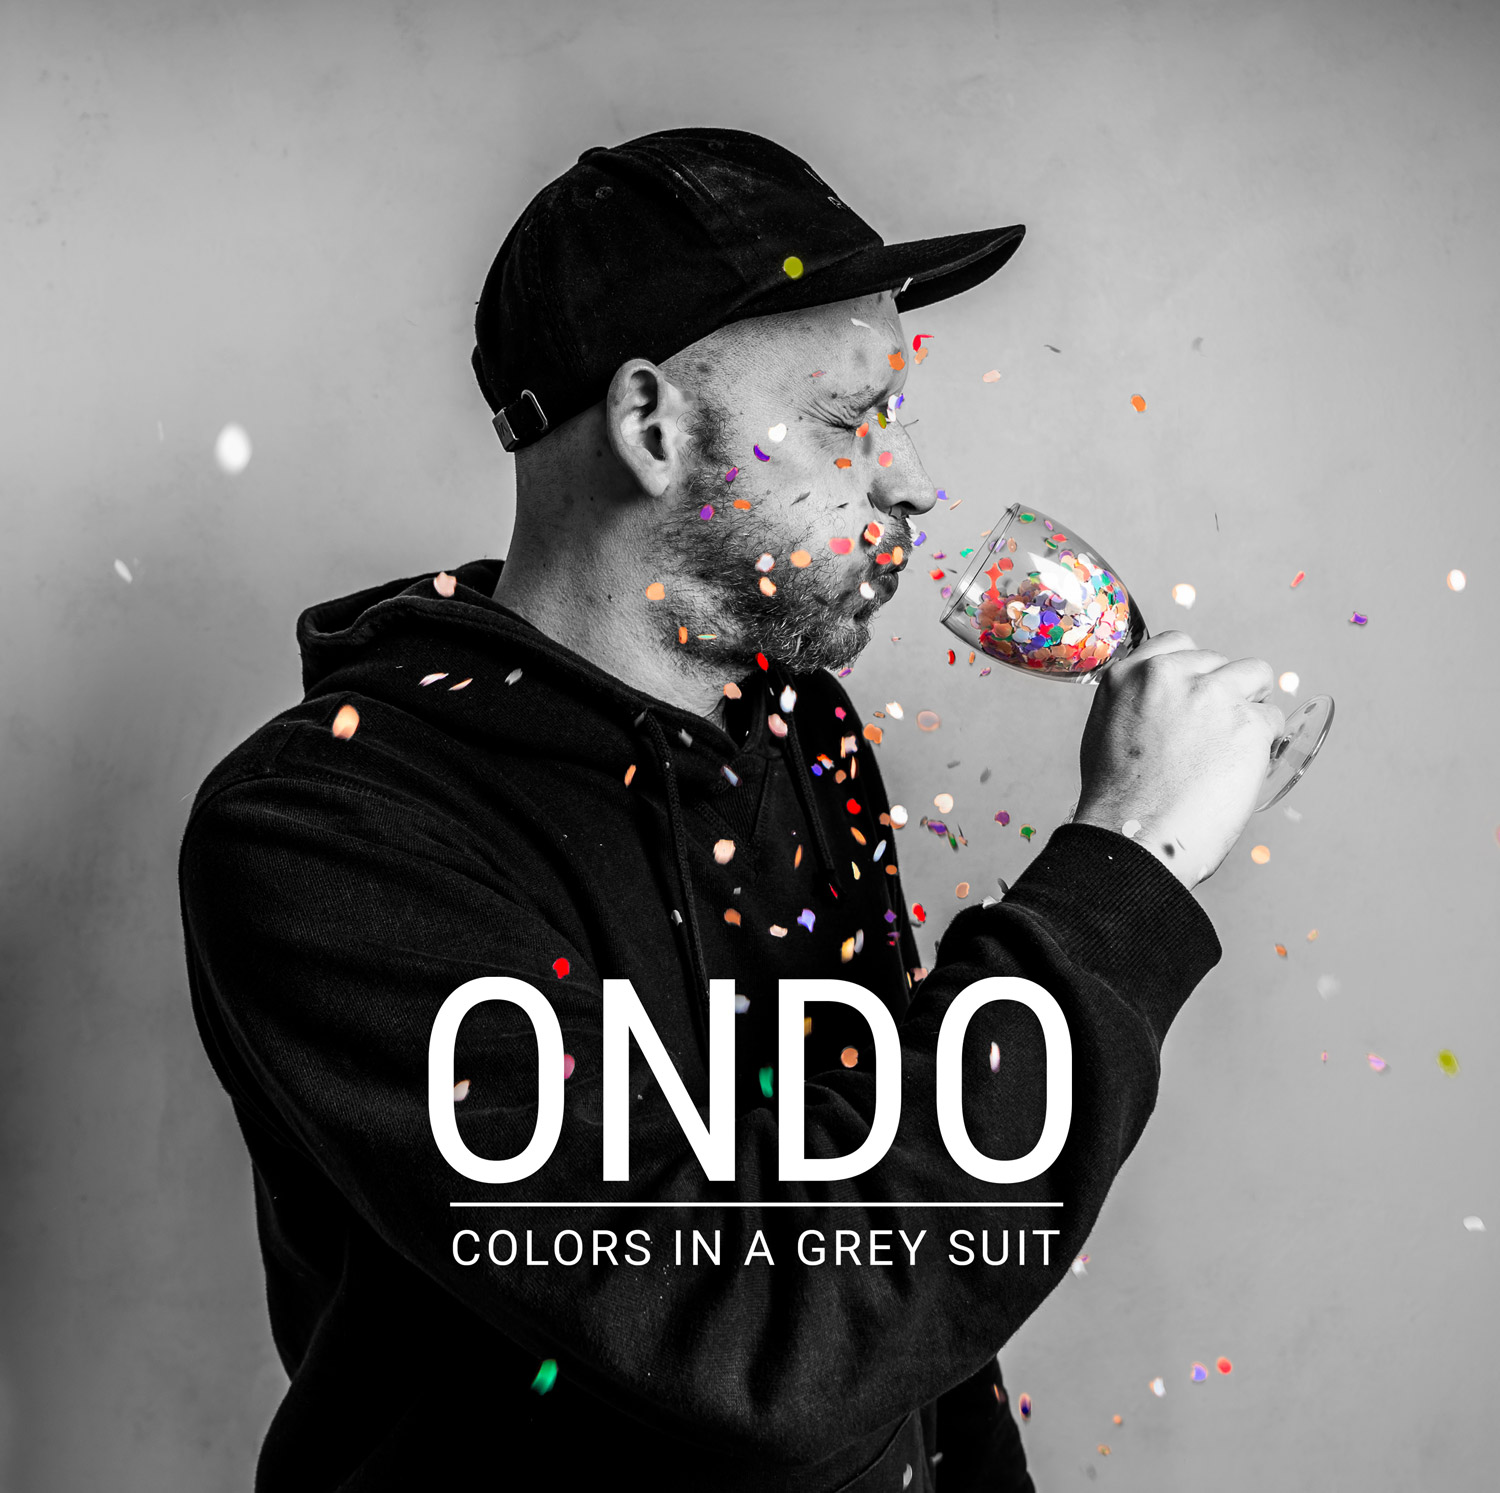 Ondo - Fotografie von Johannes Hoenig